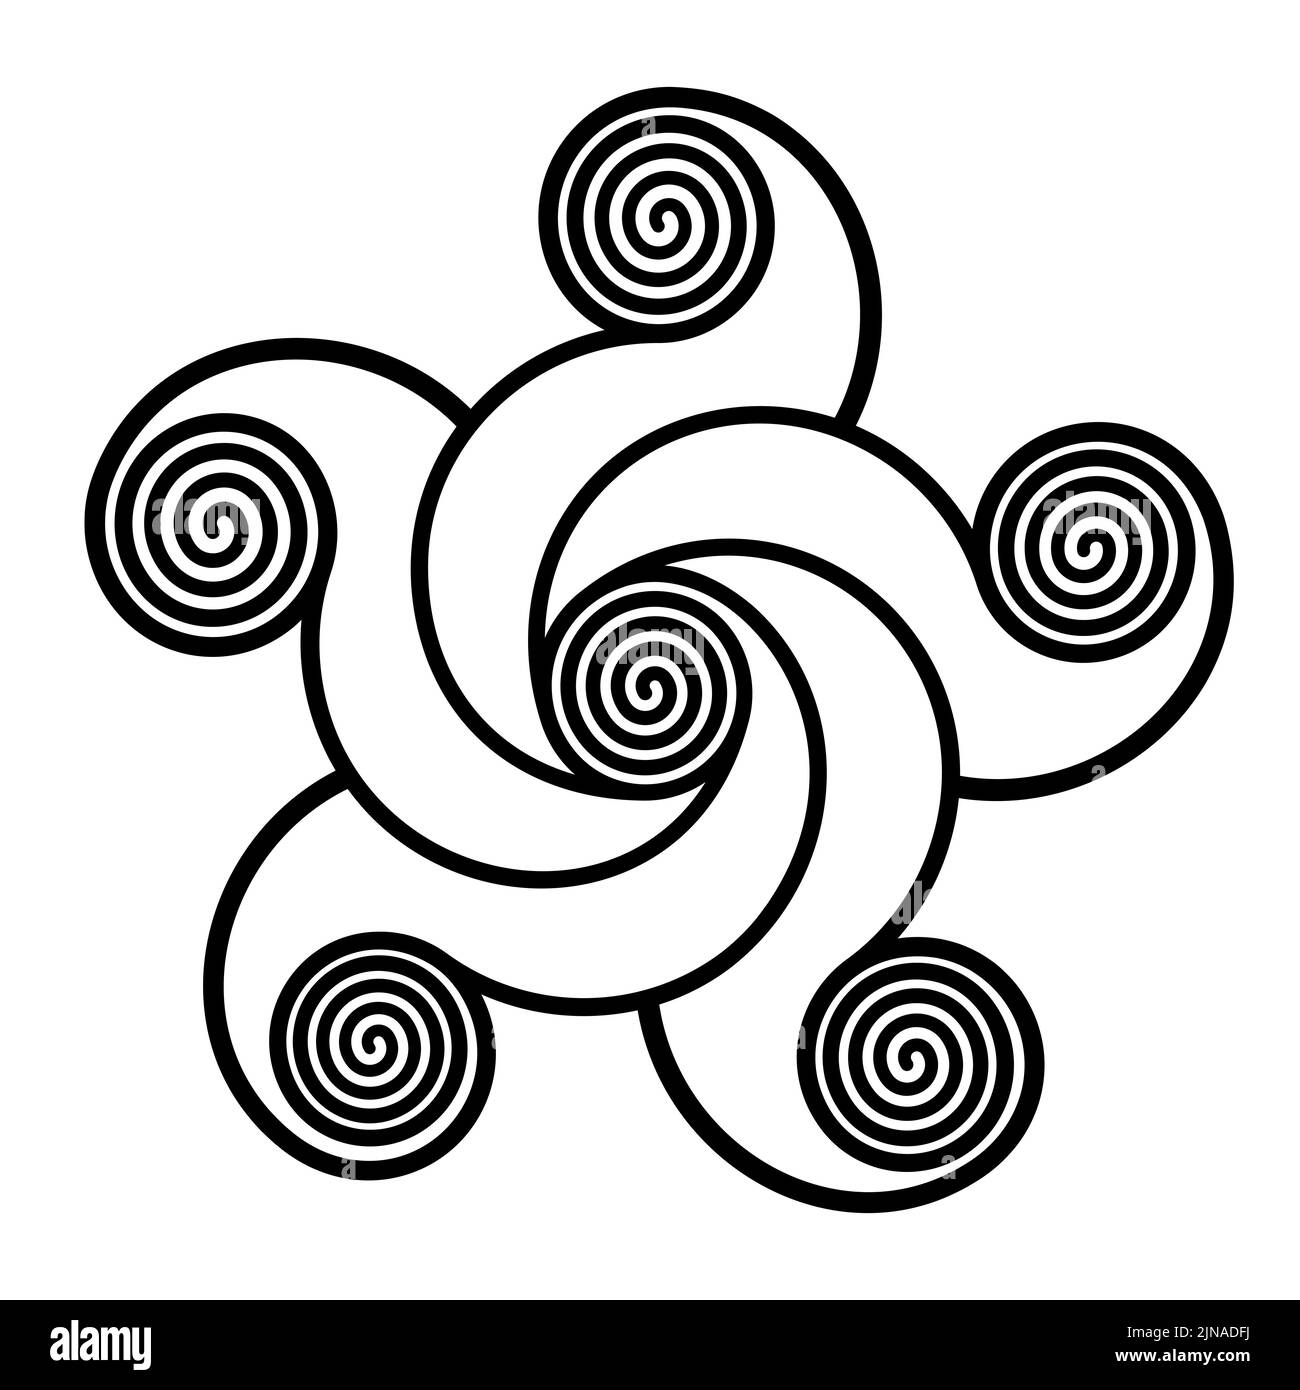 Espirales que forman una estrella en forma de pentagrama. Estrella de cinco puntas, hecha de espirales, conectada con líneas curvas a una espiral en el centro. Foto de stock